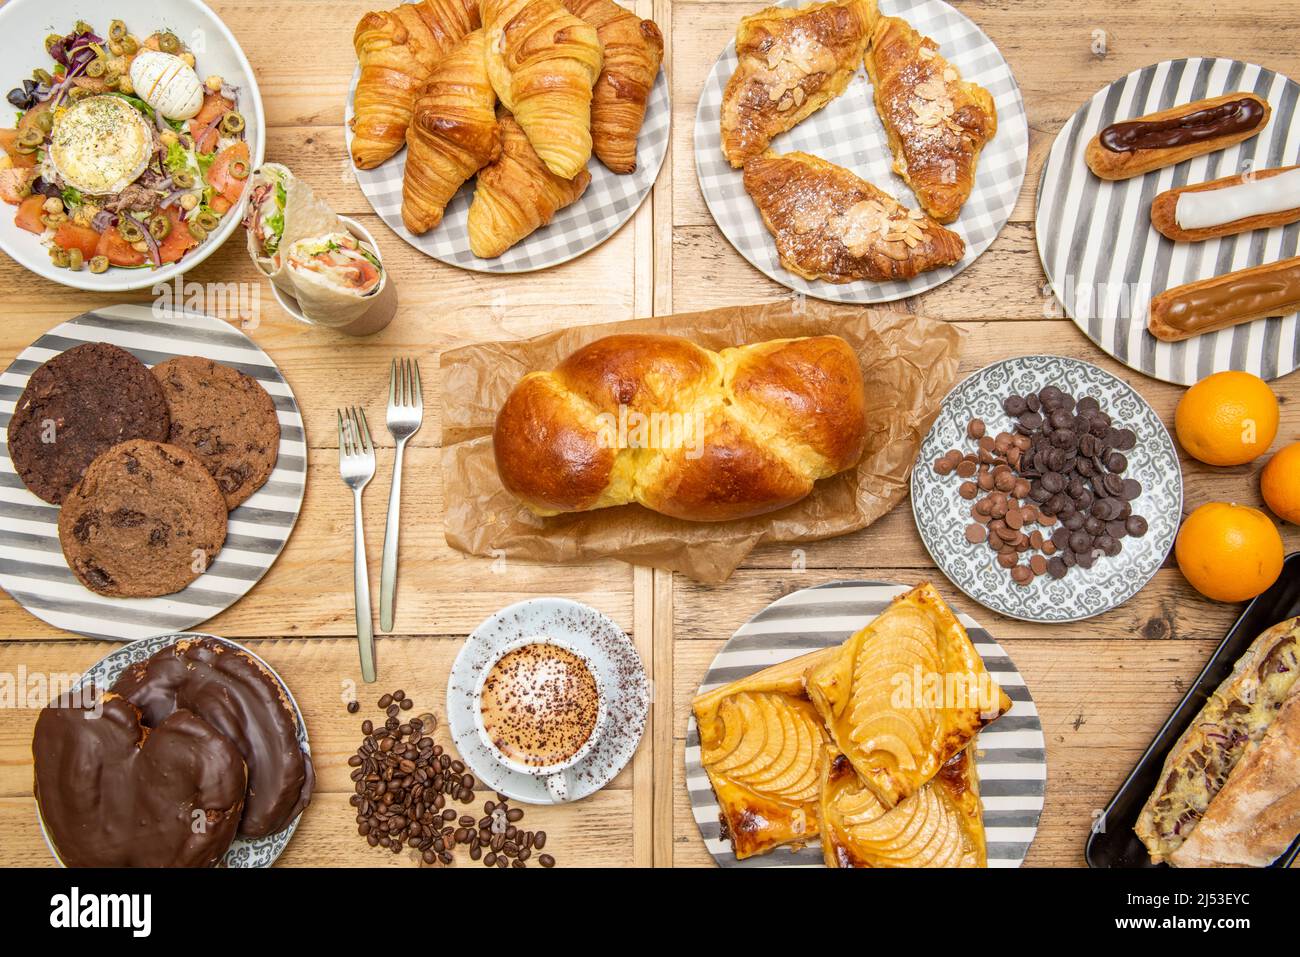 Draufsicht Bild von Desserts, Brioche Brot, Schokolade Palmen, Apfelkuchen, Cookies, Orangen, Buttercroissants und Salat Stockfoto